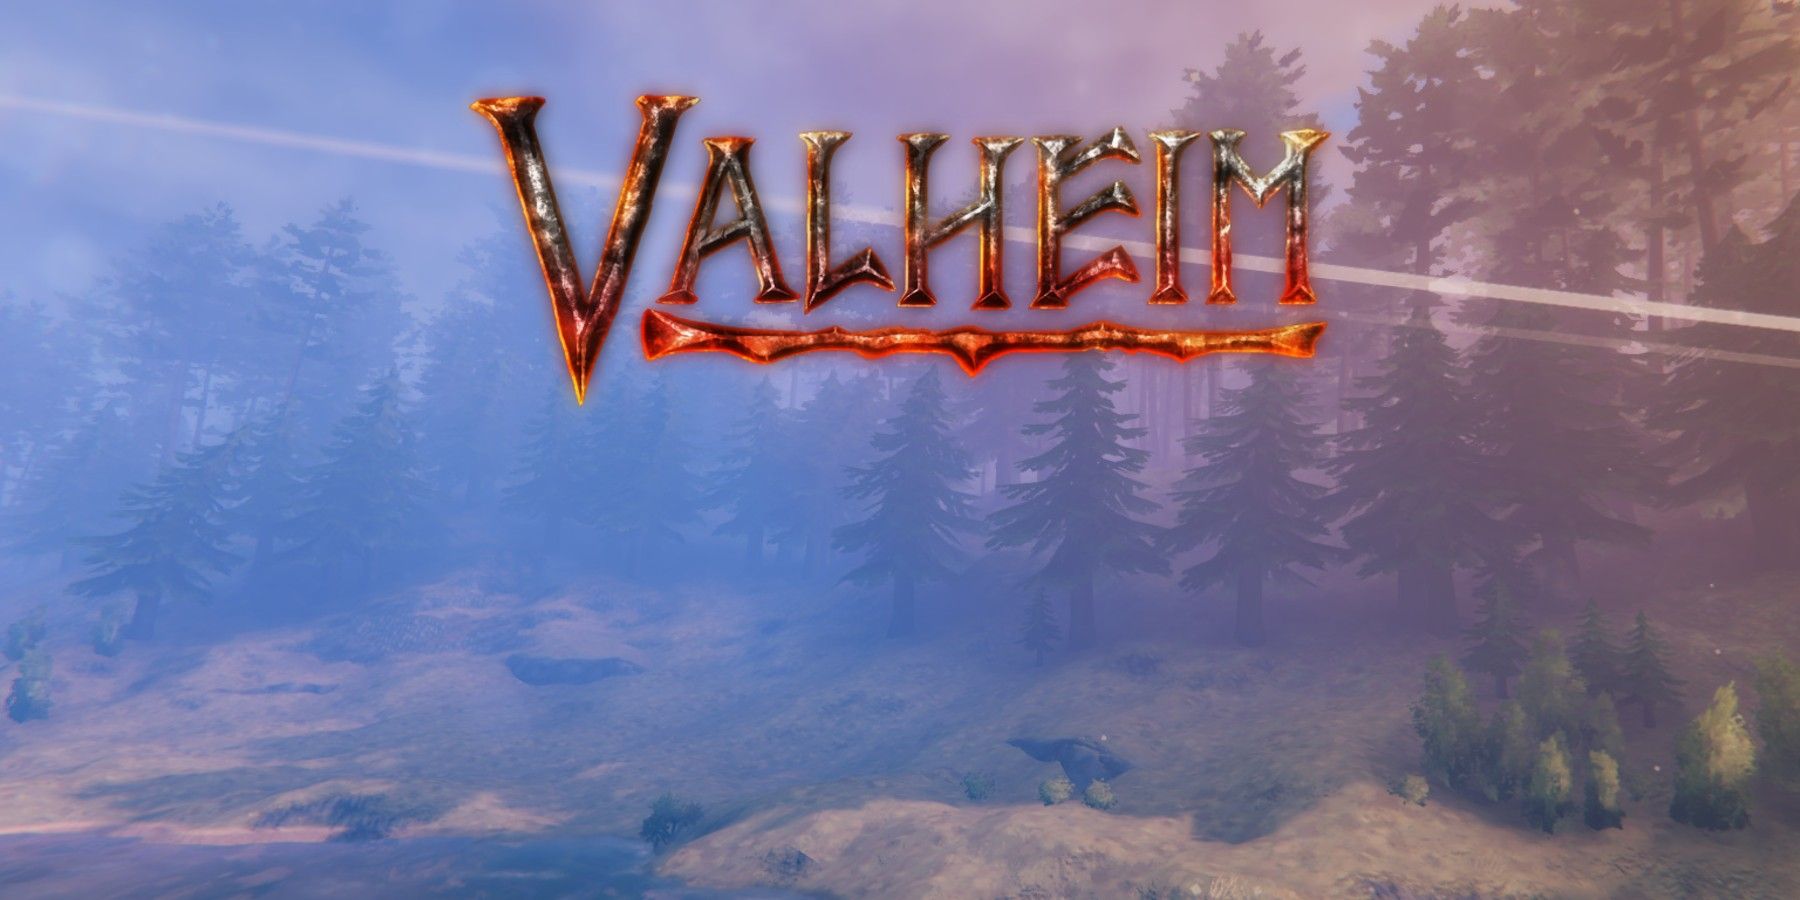 valheim logo and plains